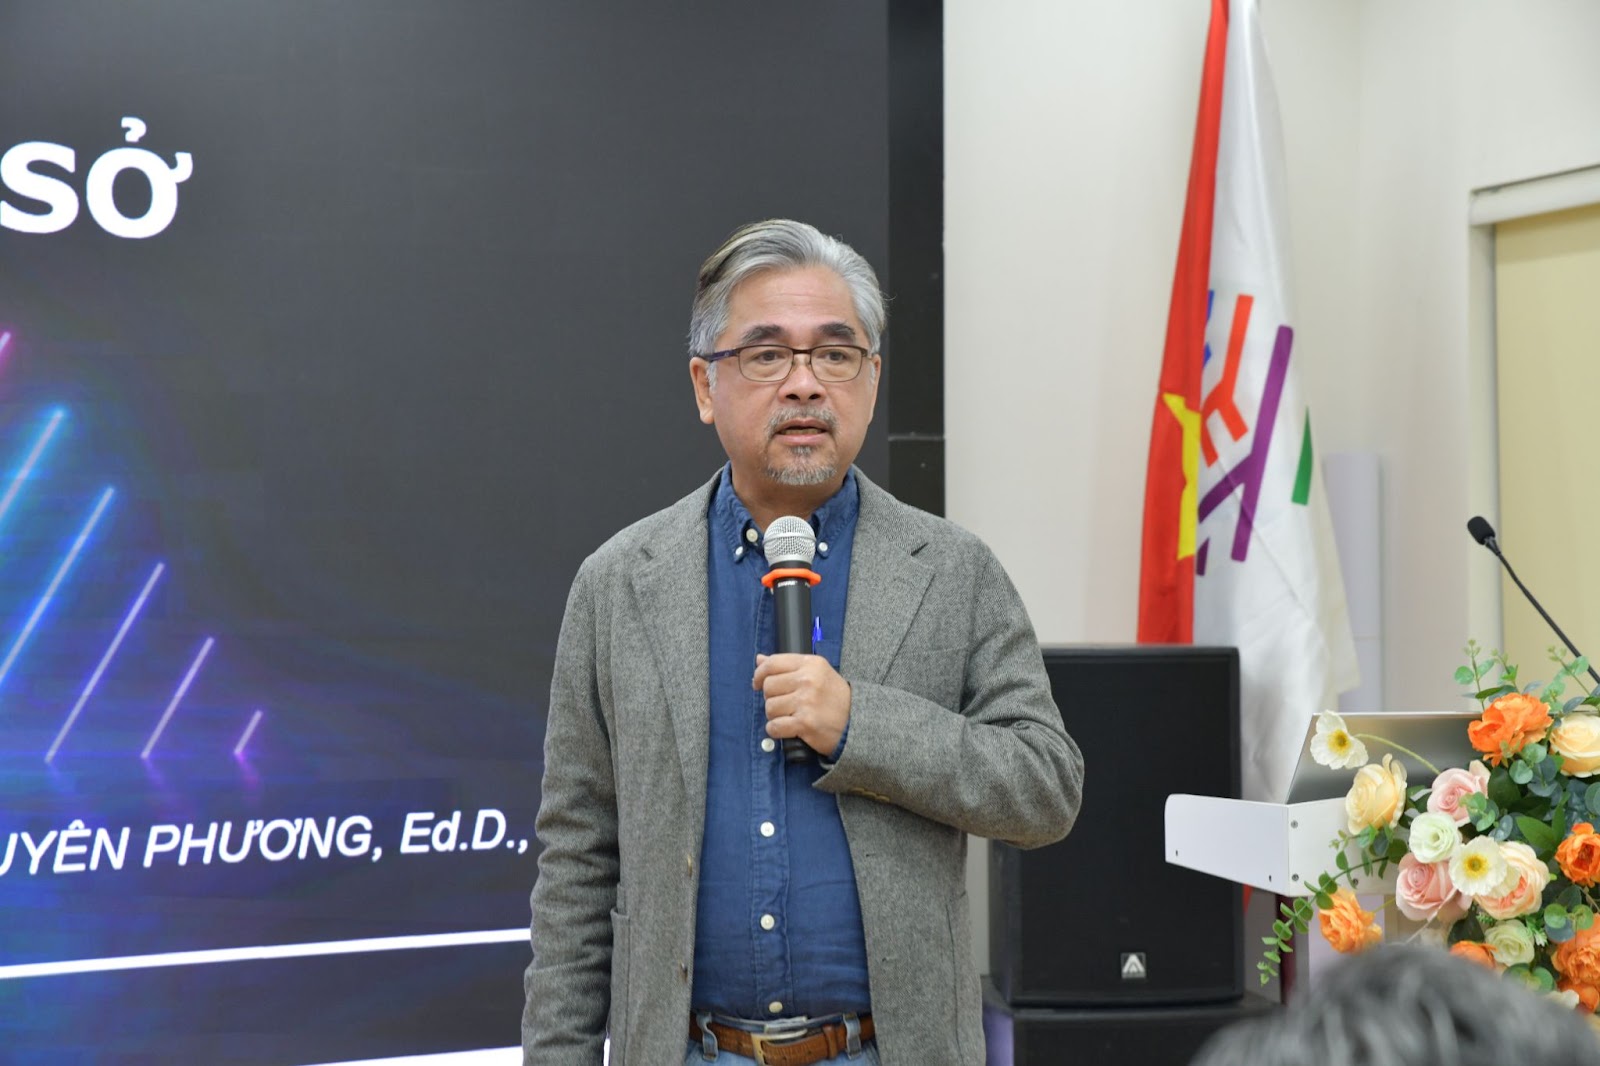 Dr. Lê Nguyên Phương at the event